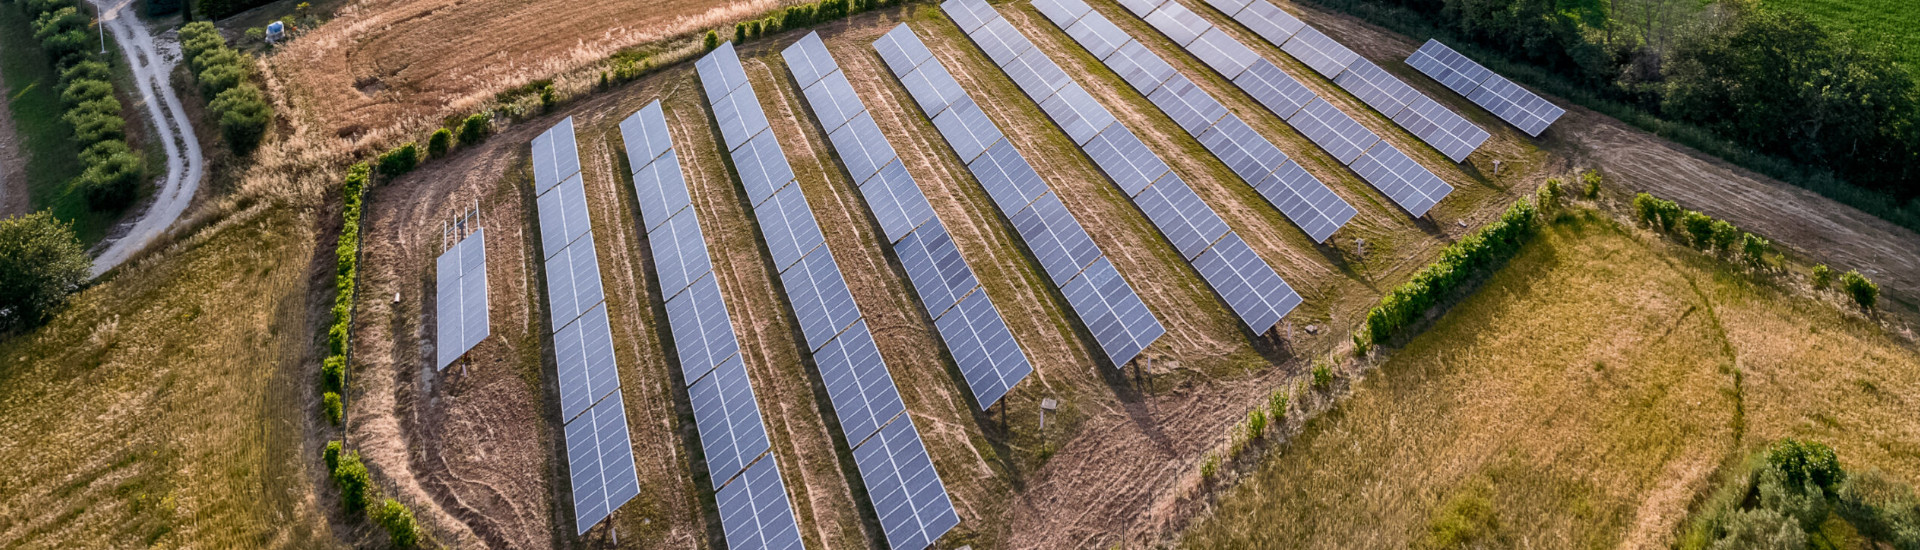 impianto fotovoltaico su terreno agricolo